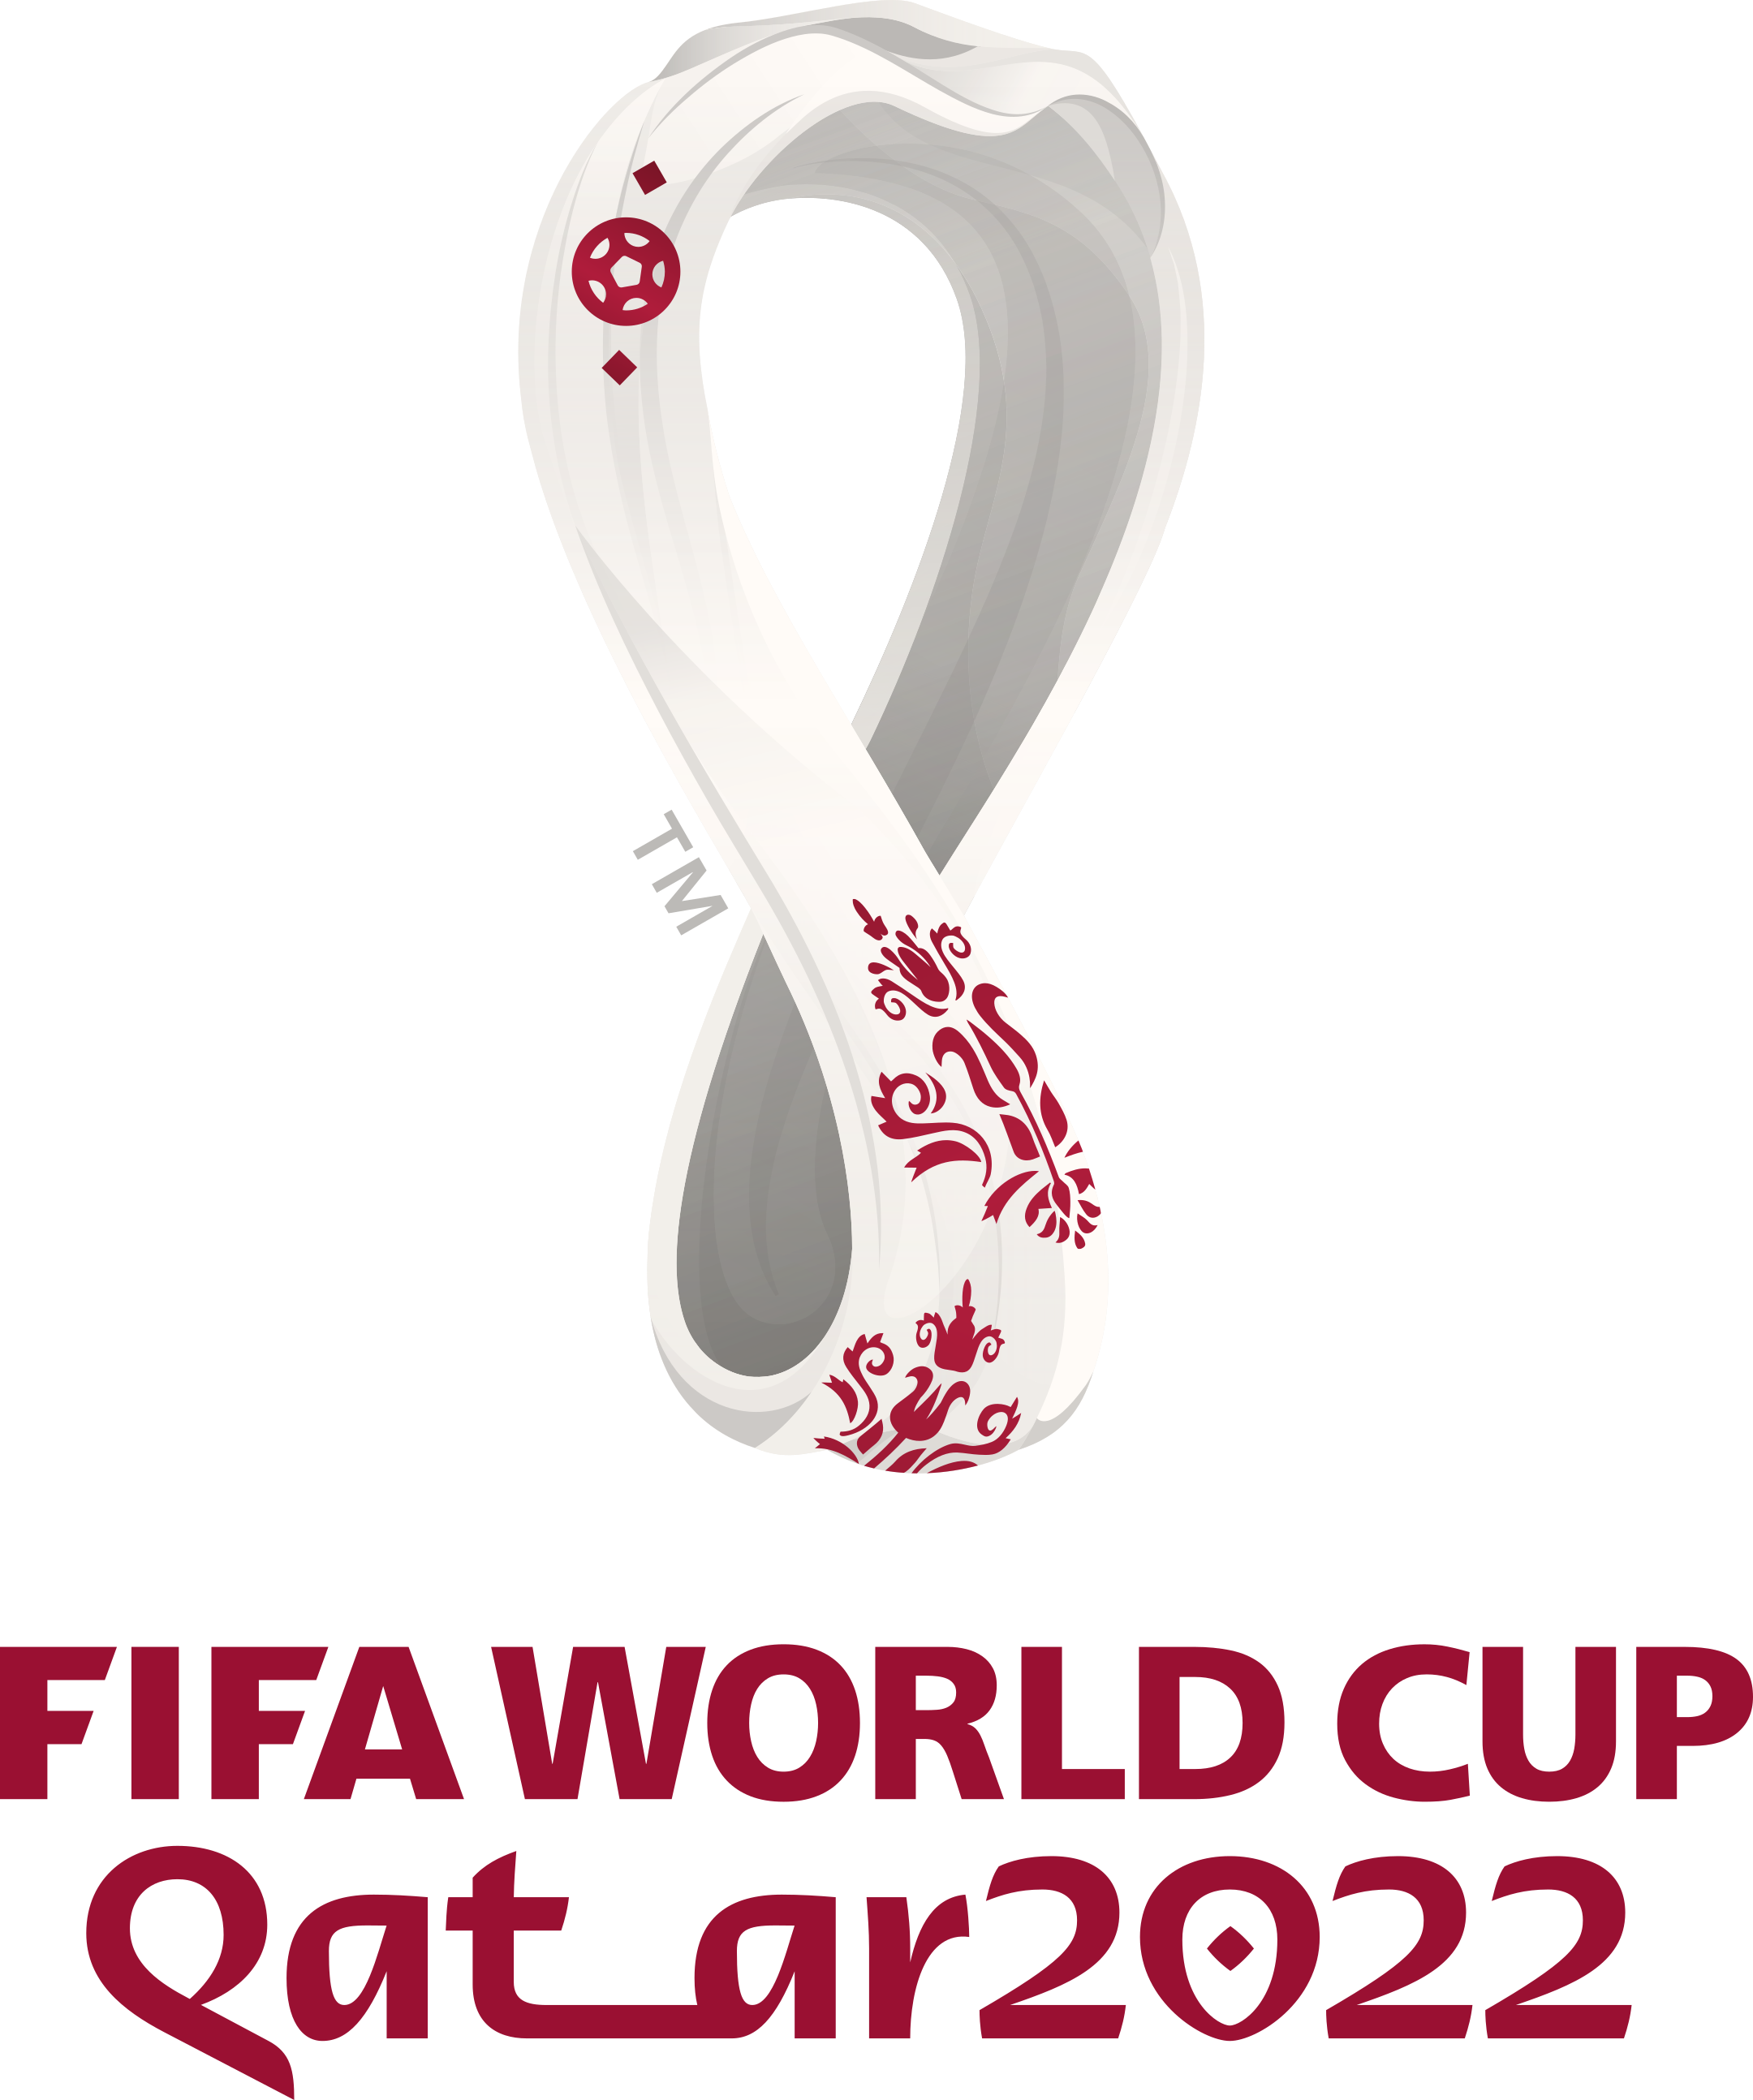 world cup 2022 logo 1 - Copa Mundial de Fútbol Catar 2022 Logo